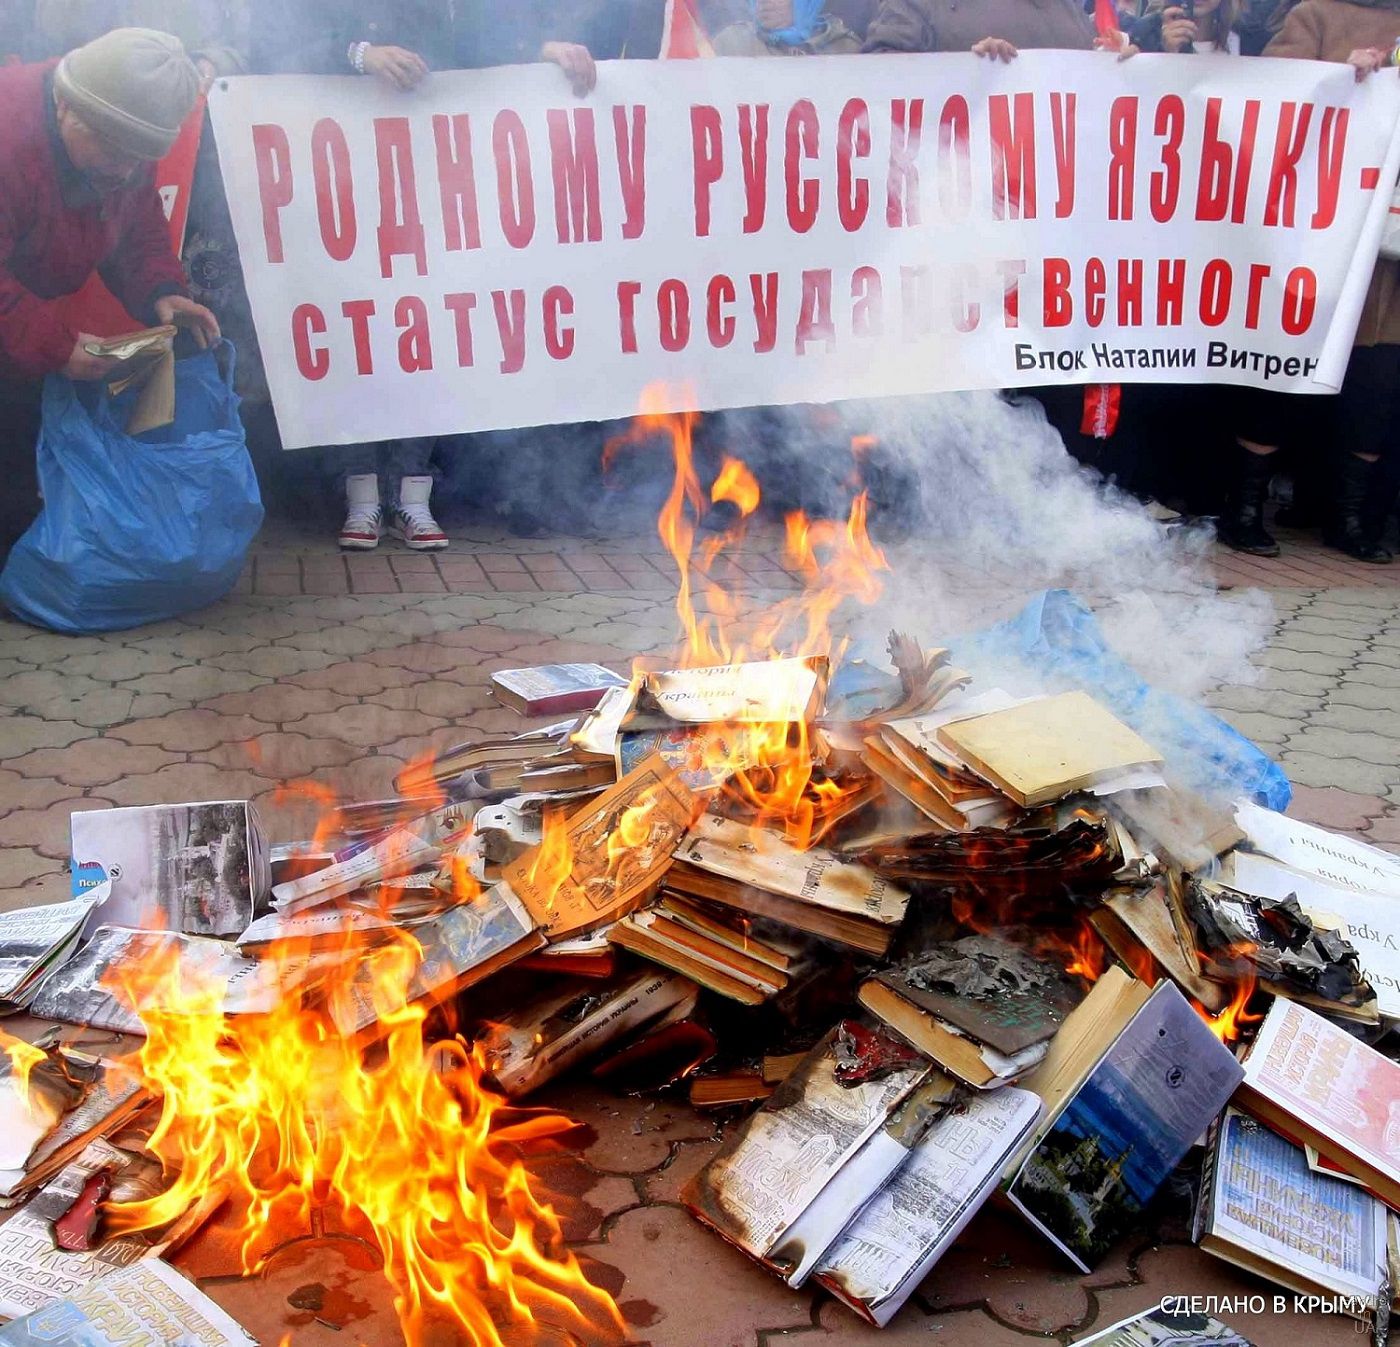 book-burning-in-crimea.jpg